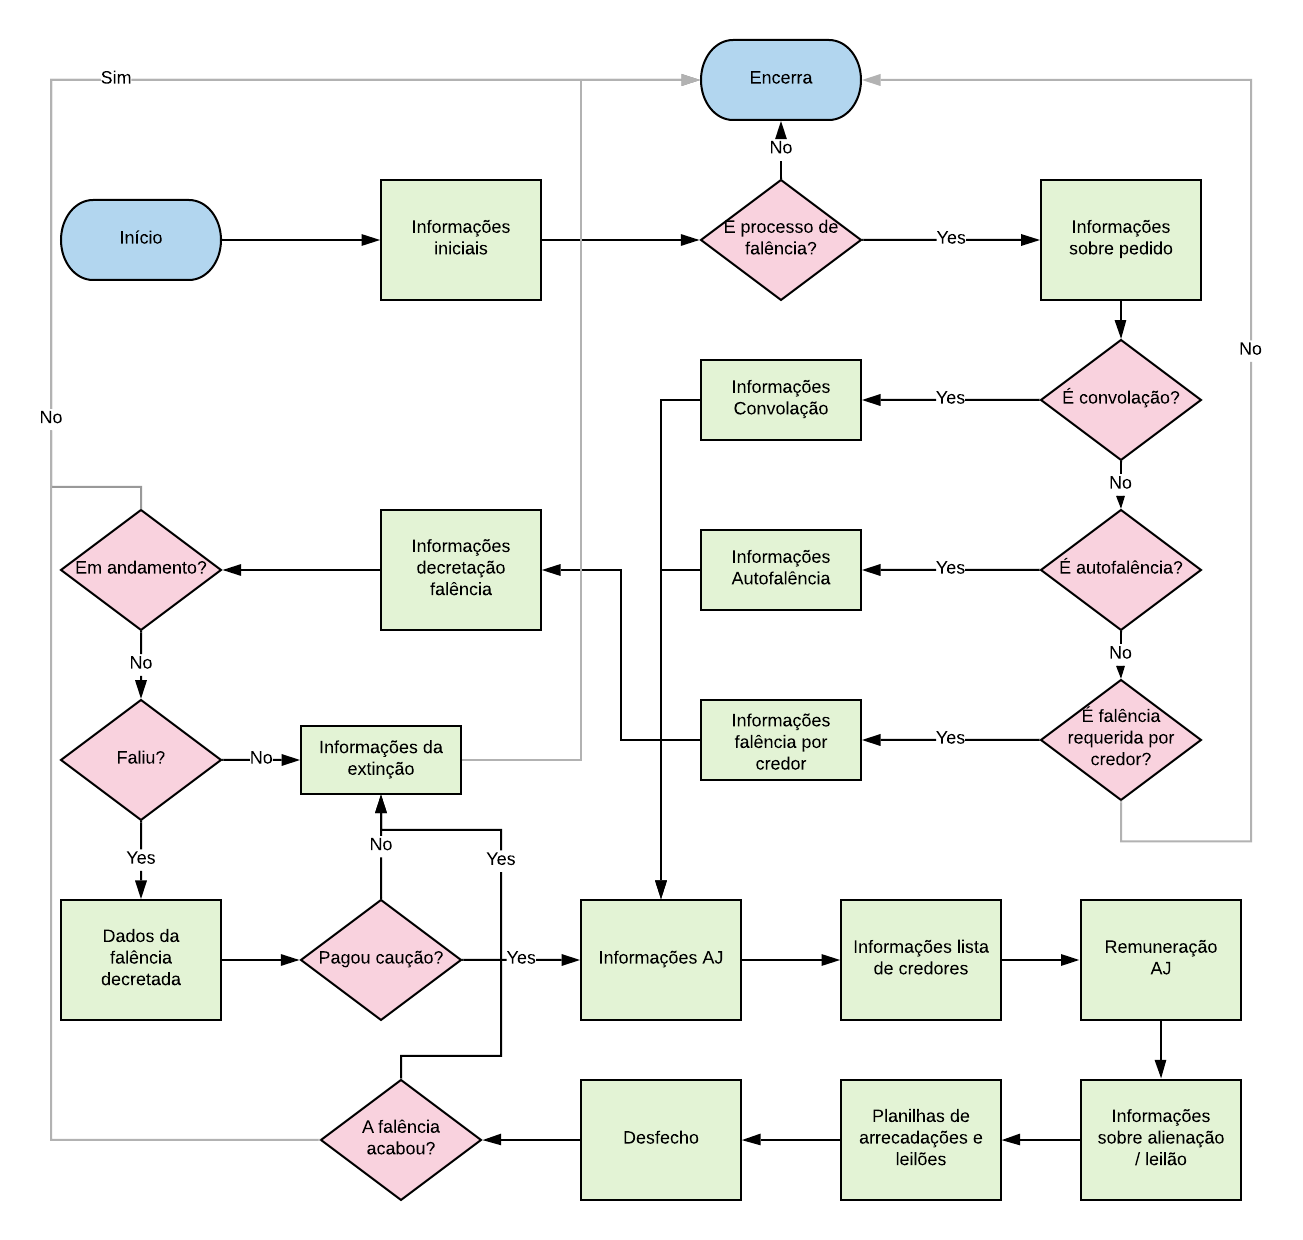 Diagrama representando o funcionamento do questionário.